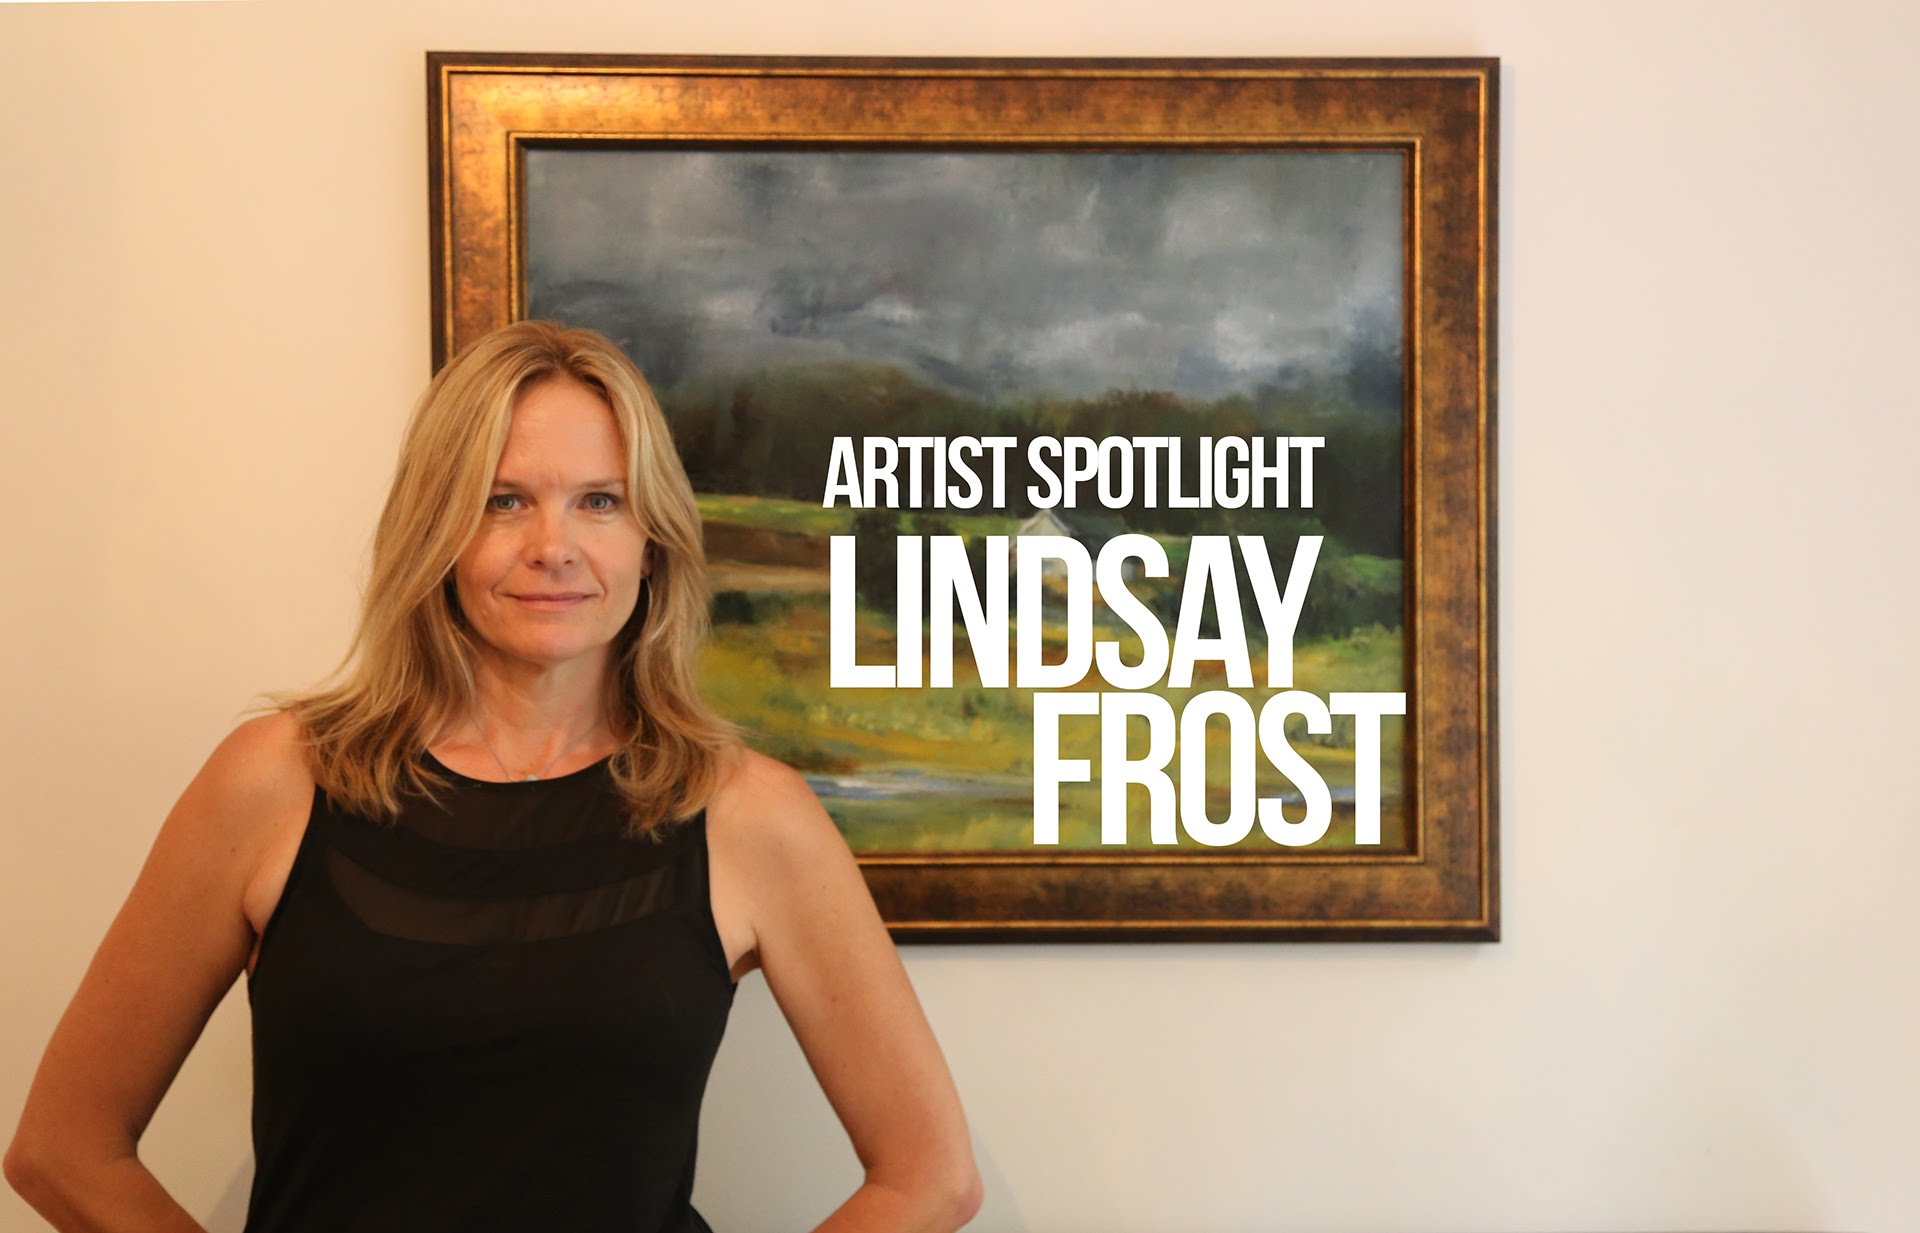 Lindsay frost frasier